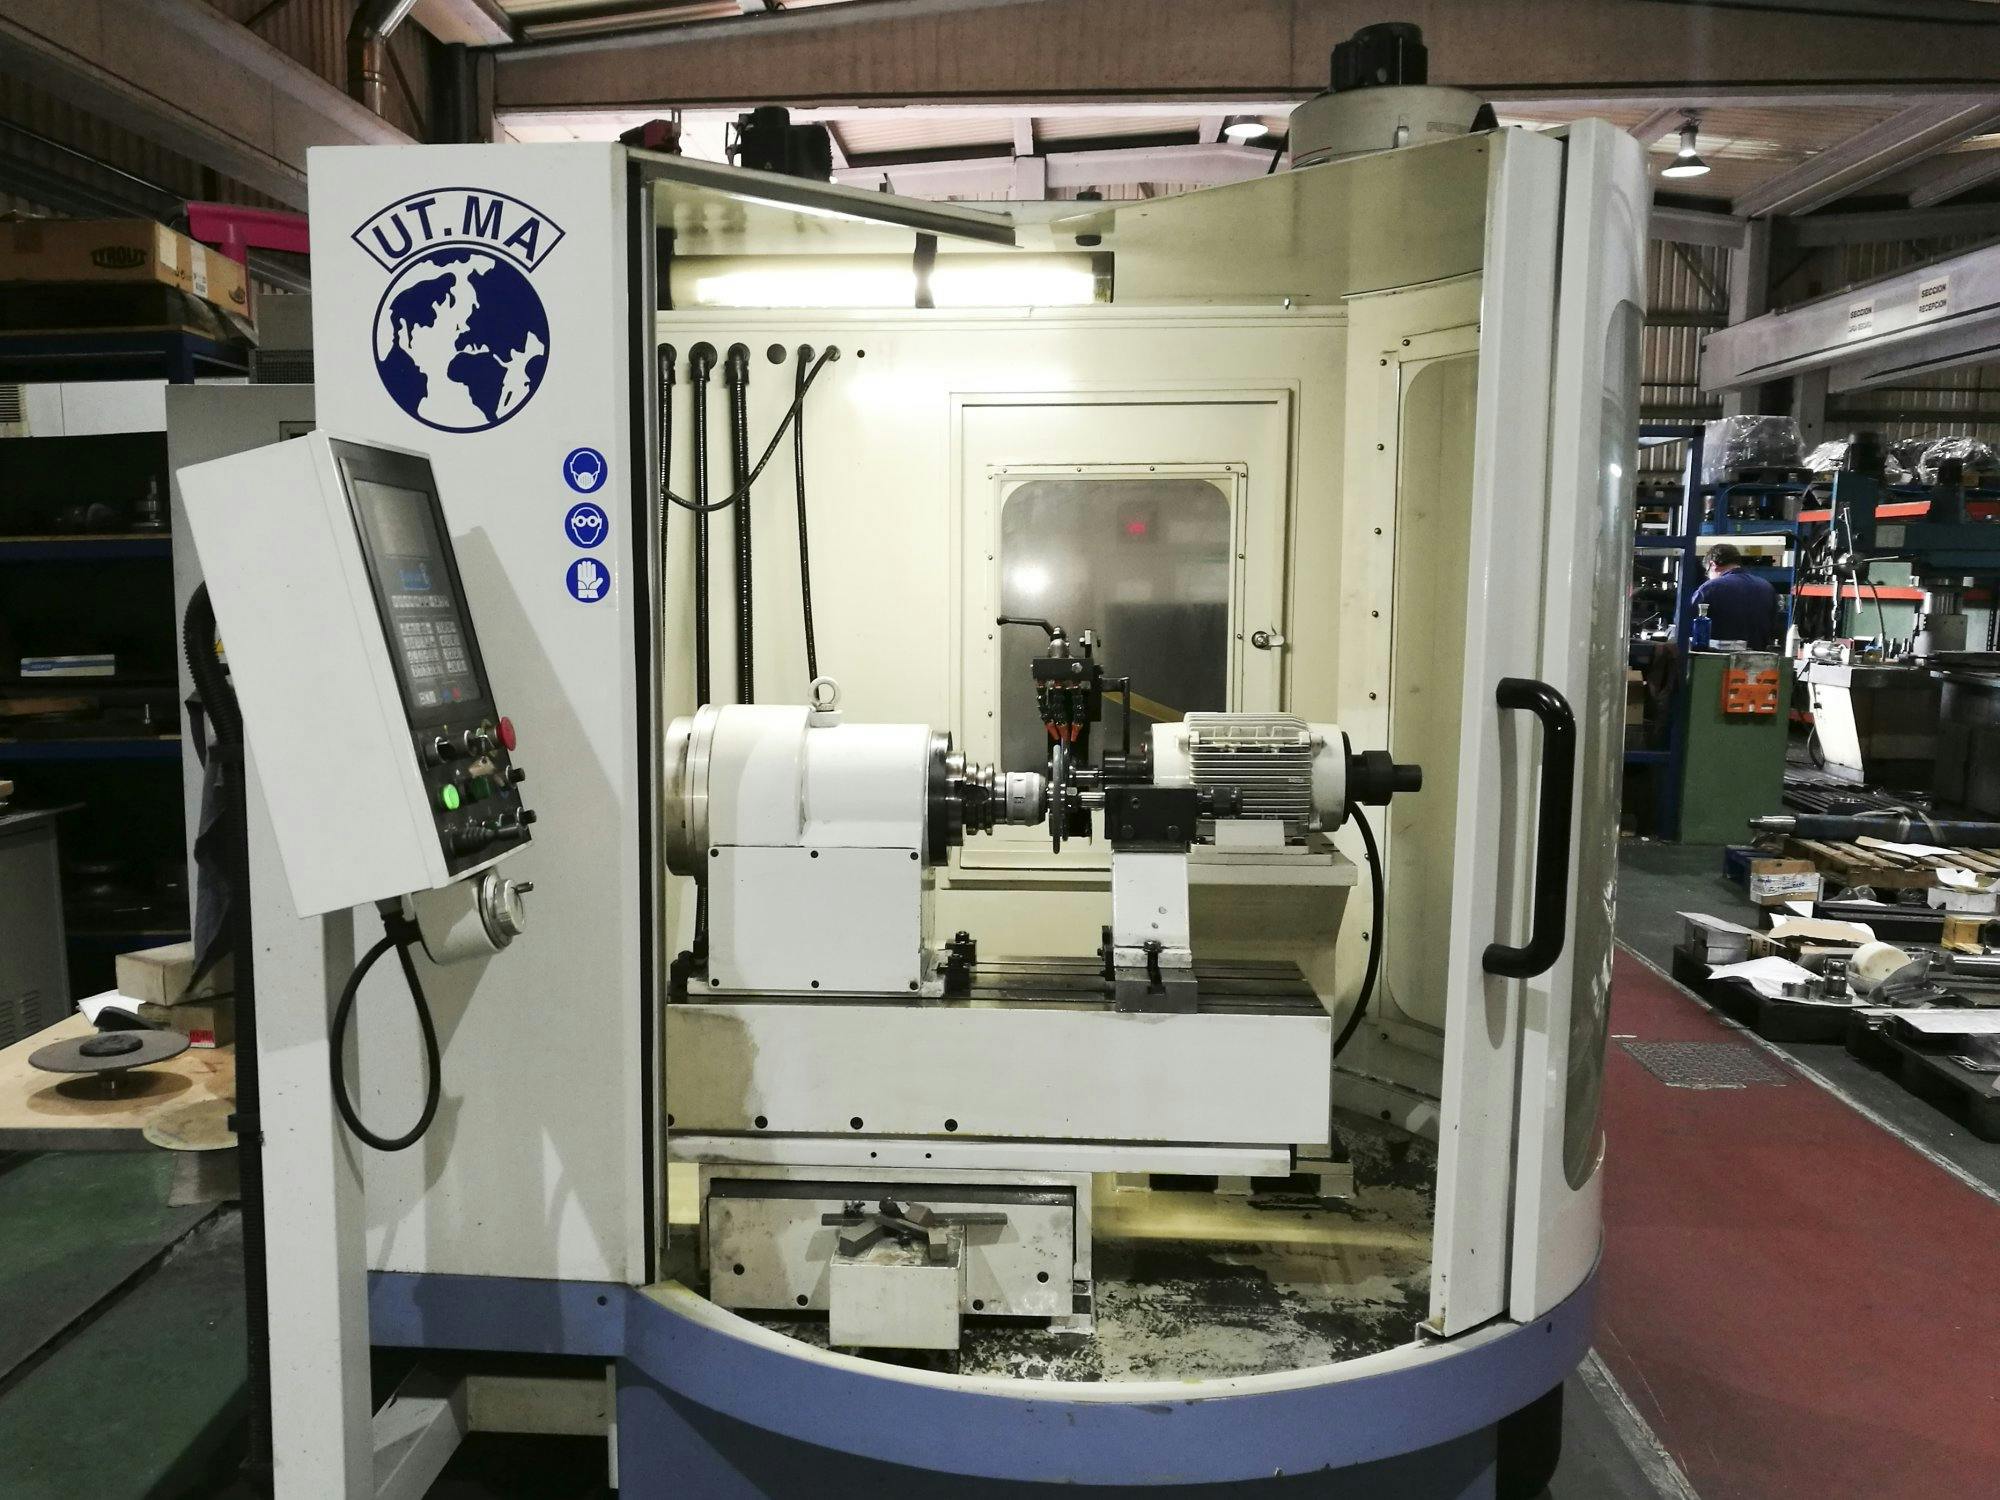 Čelní pohled  na UT.MA P20 CNC stroj